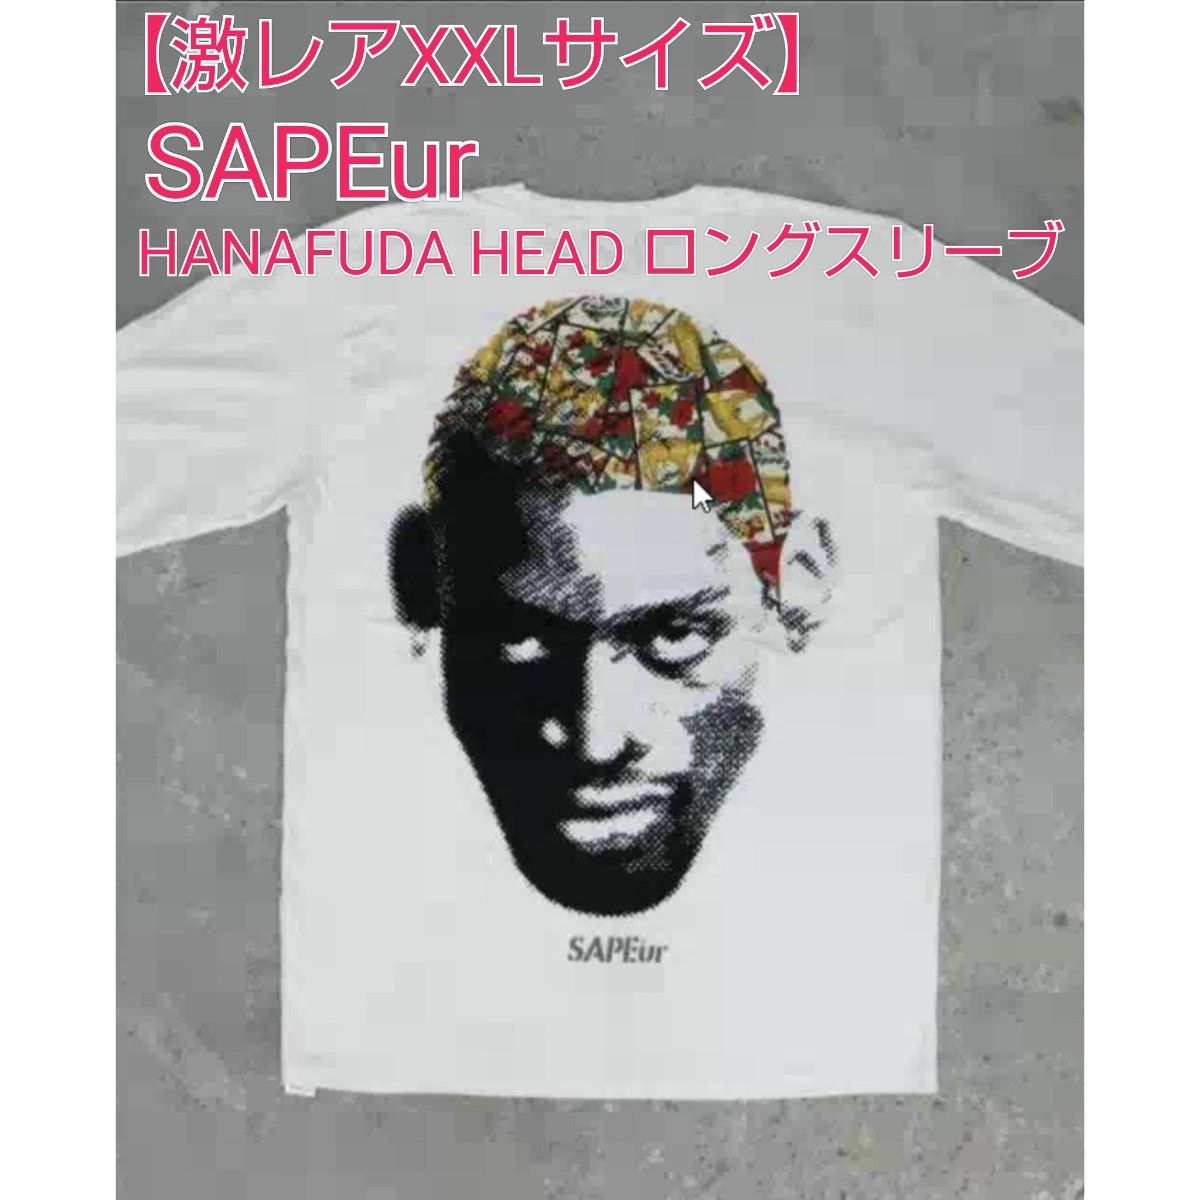 XXL】 SAPEur HANAFUDA HEAD L/S TEE WHITE-